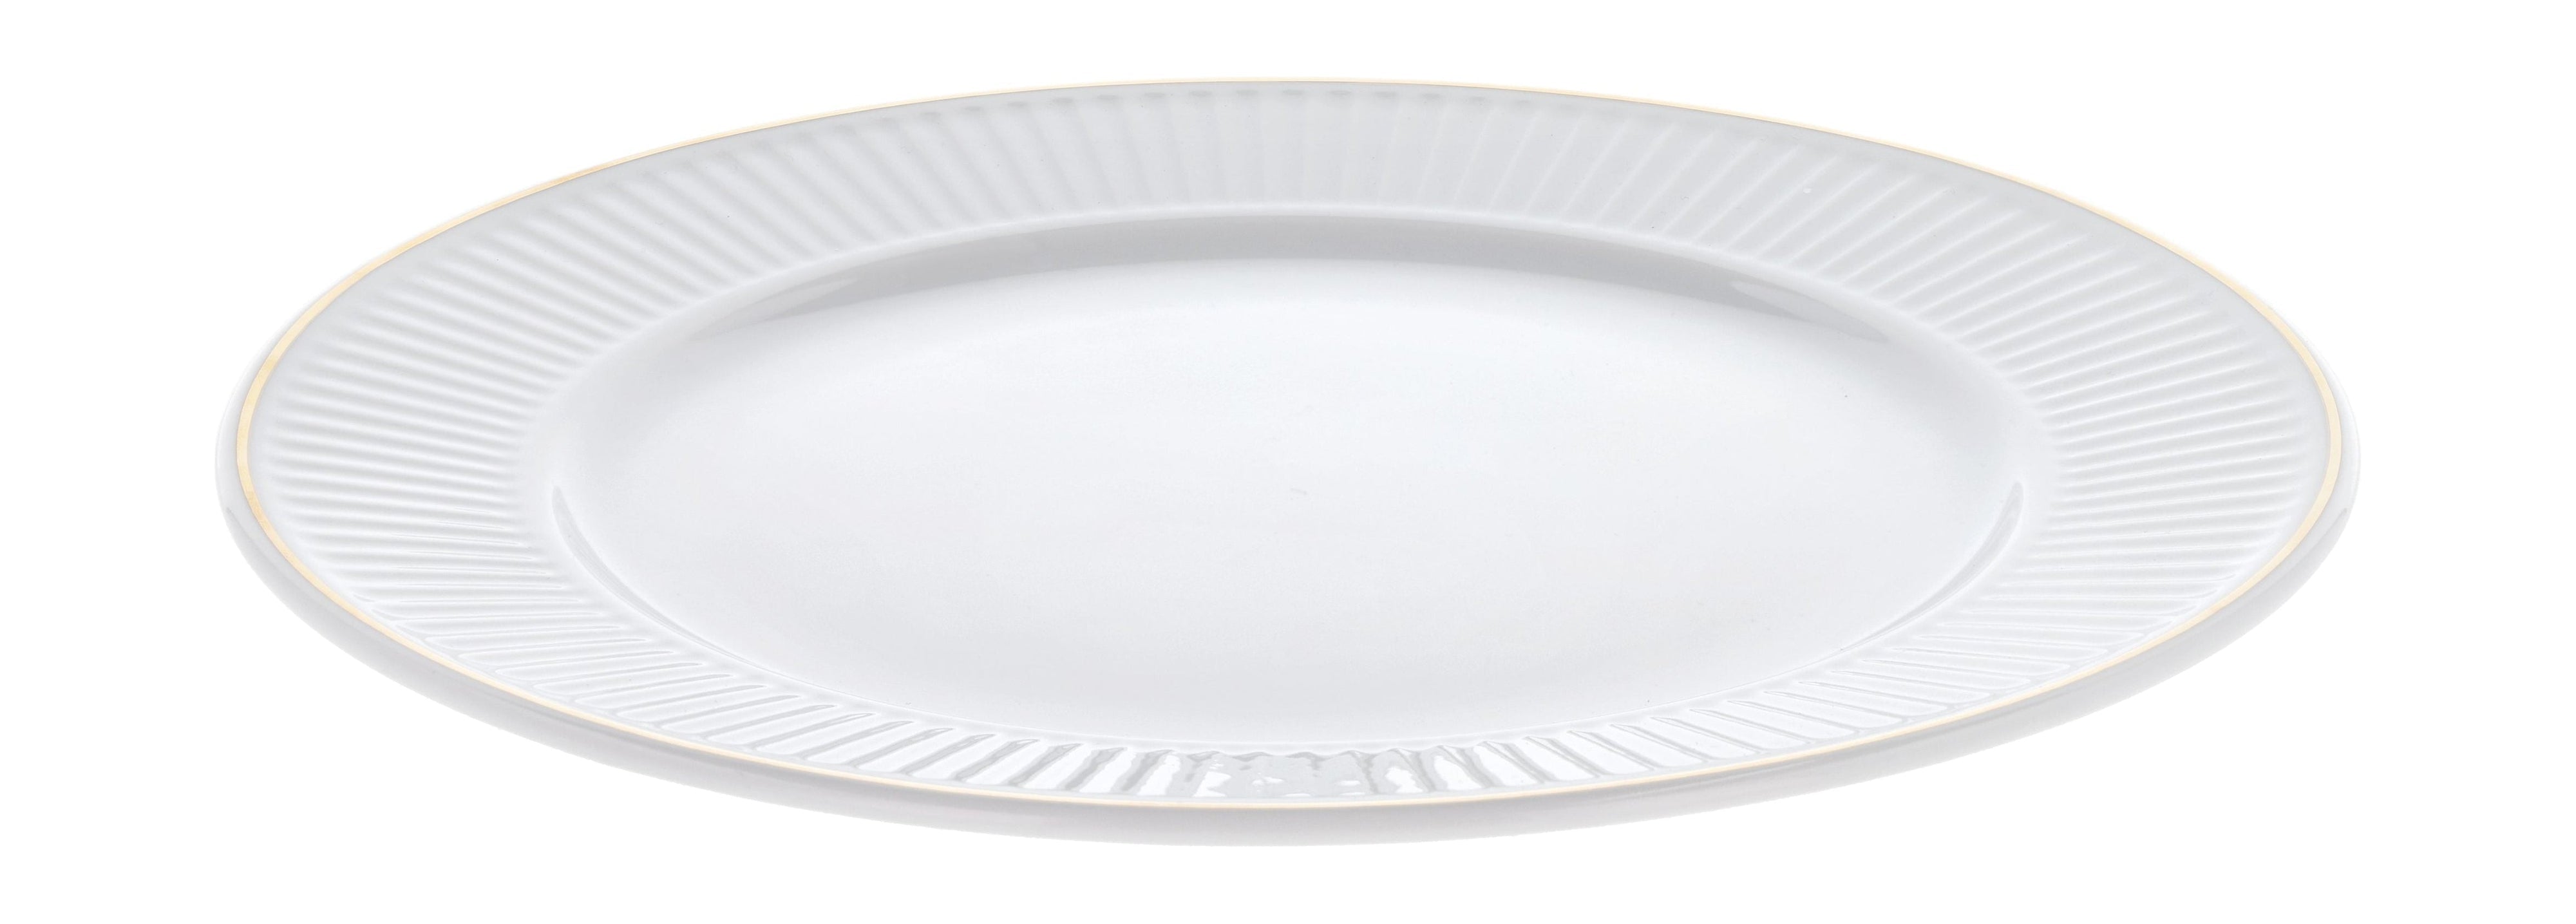 Pillivuyt Assie de la plissé blanc / matt or, Ø22 cm